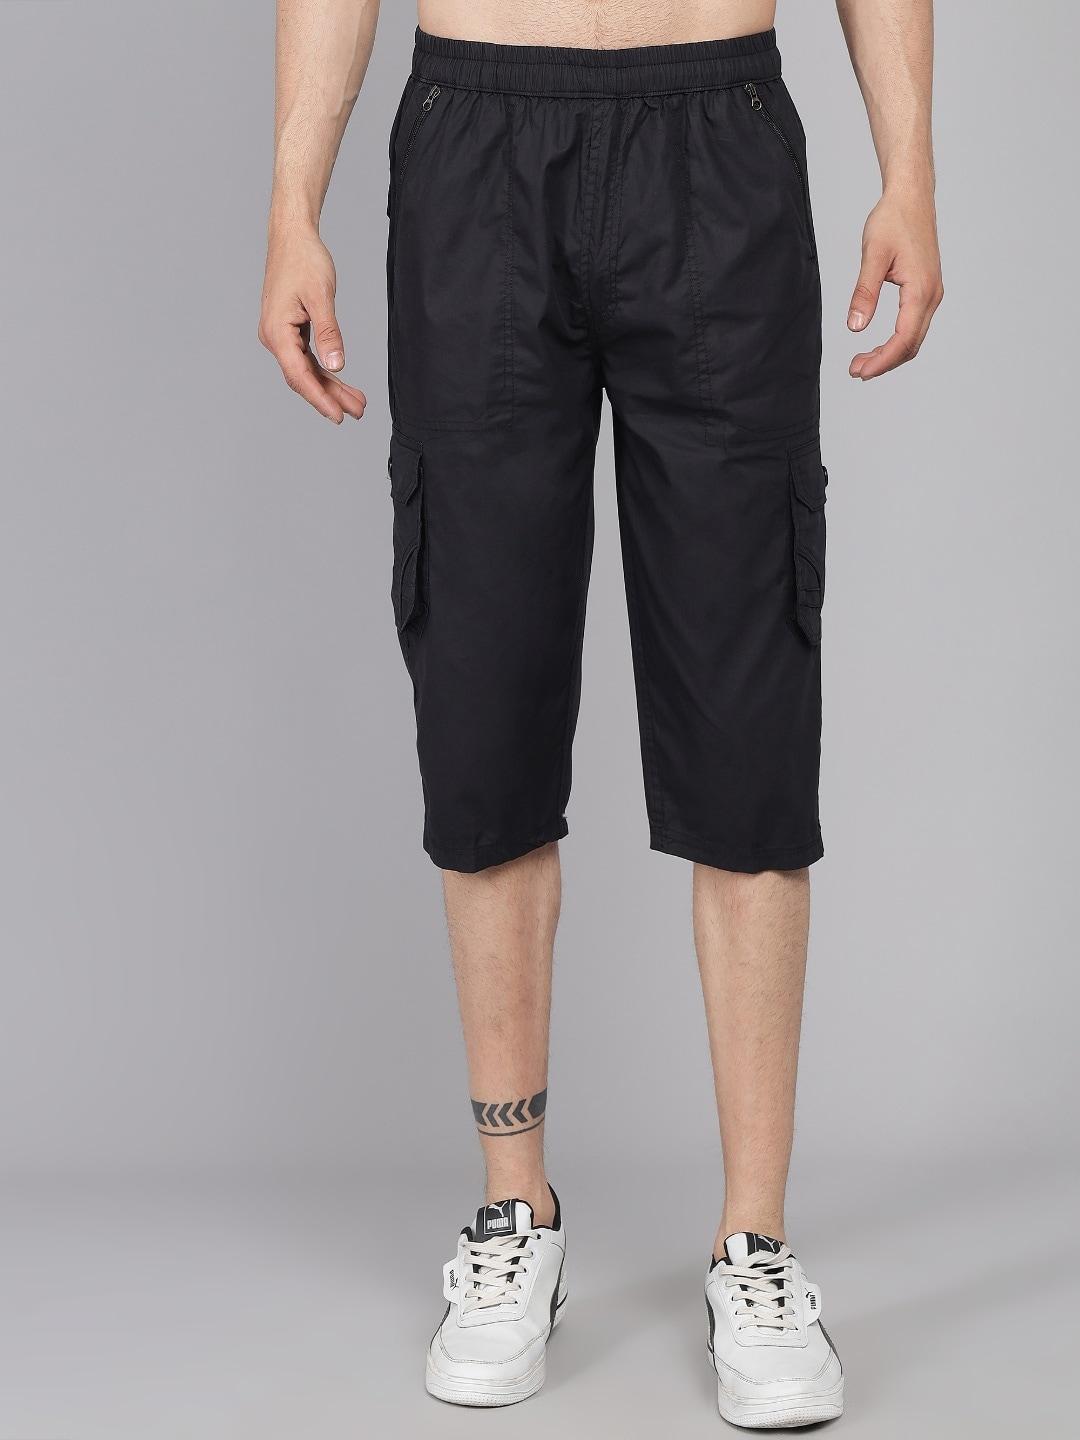 studio nexx men black loose fit cargo shorts